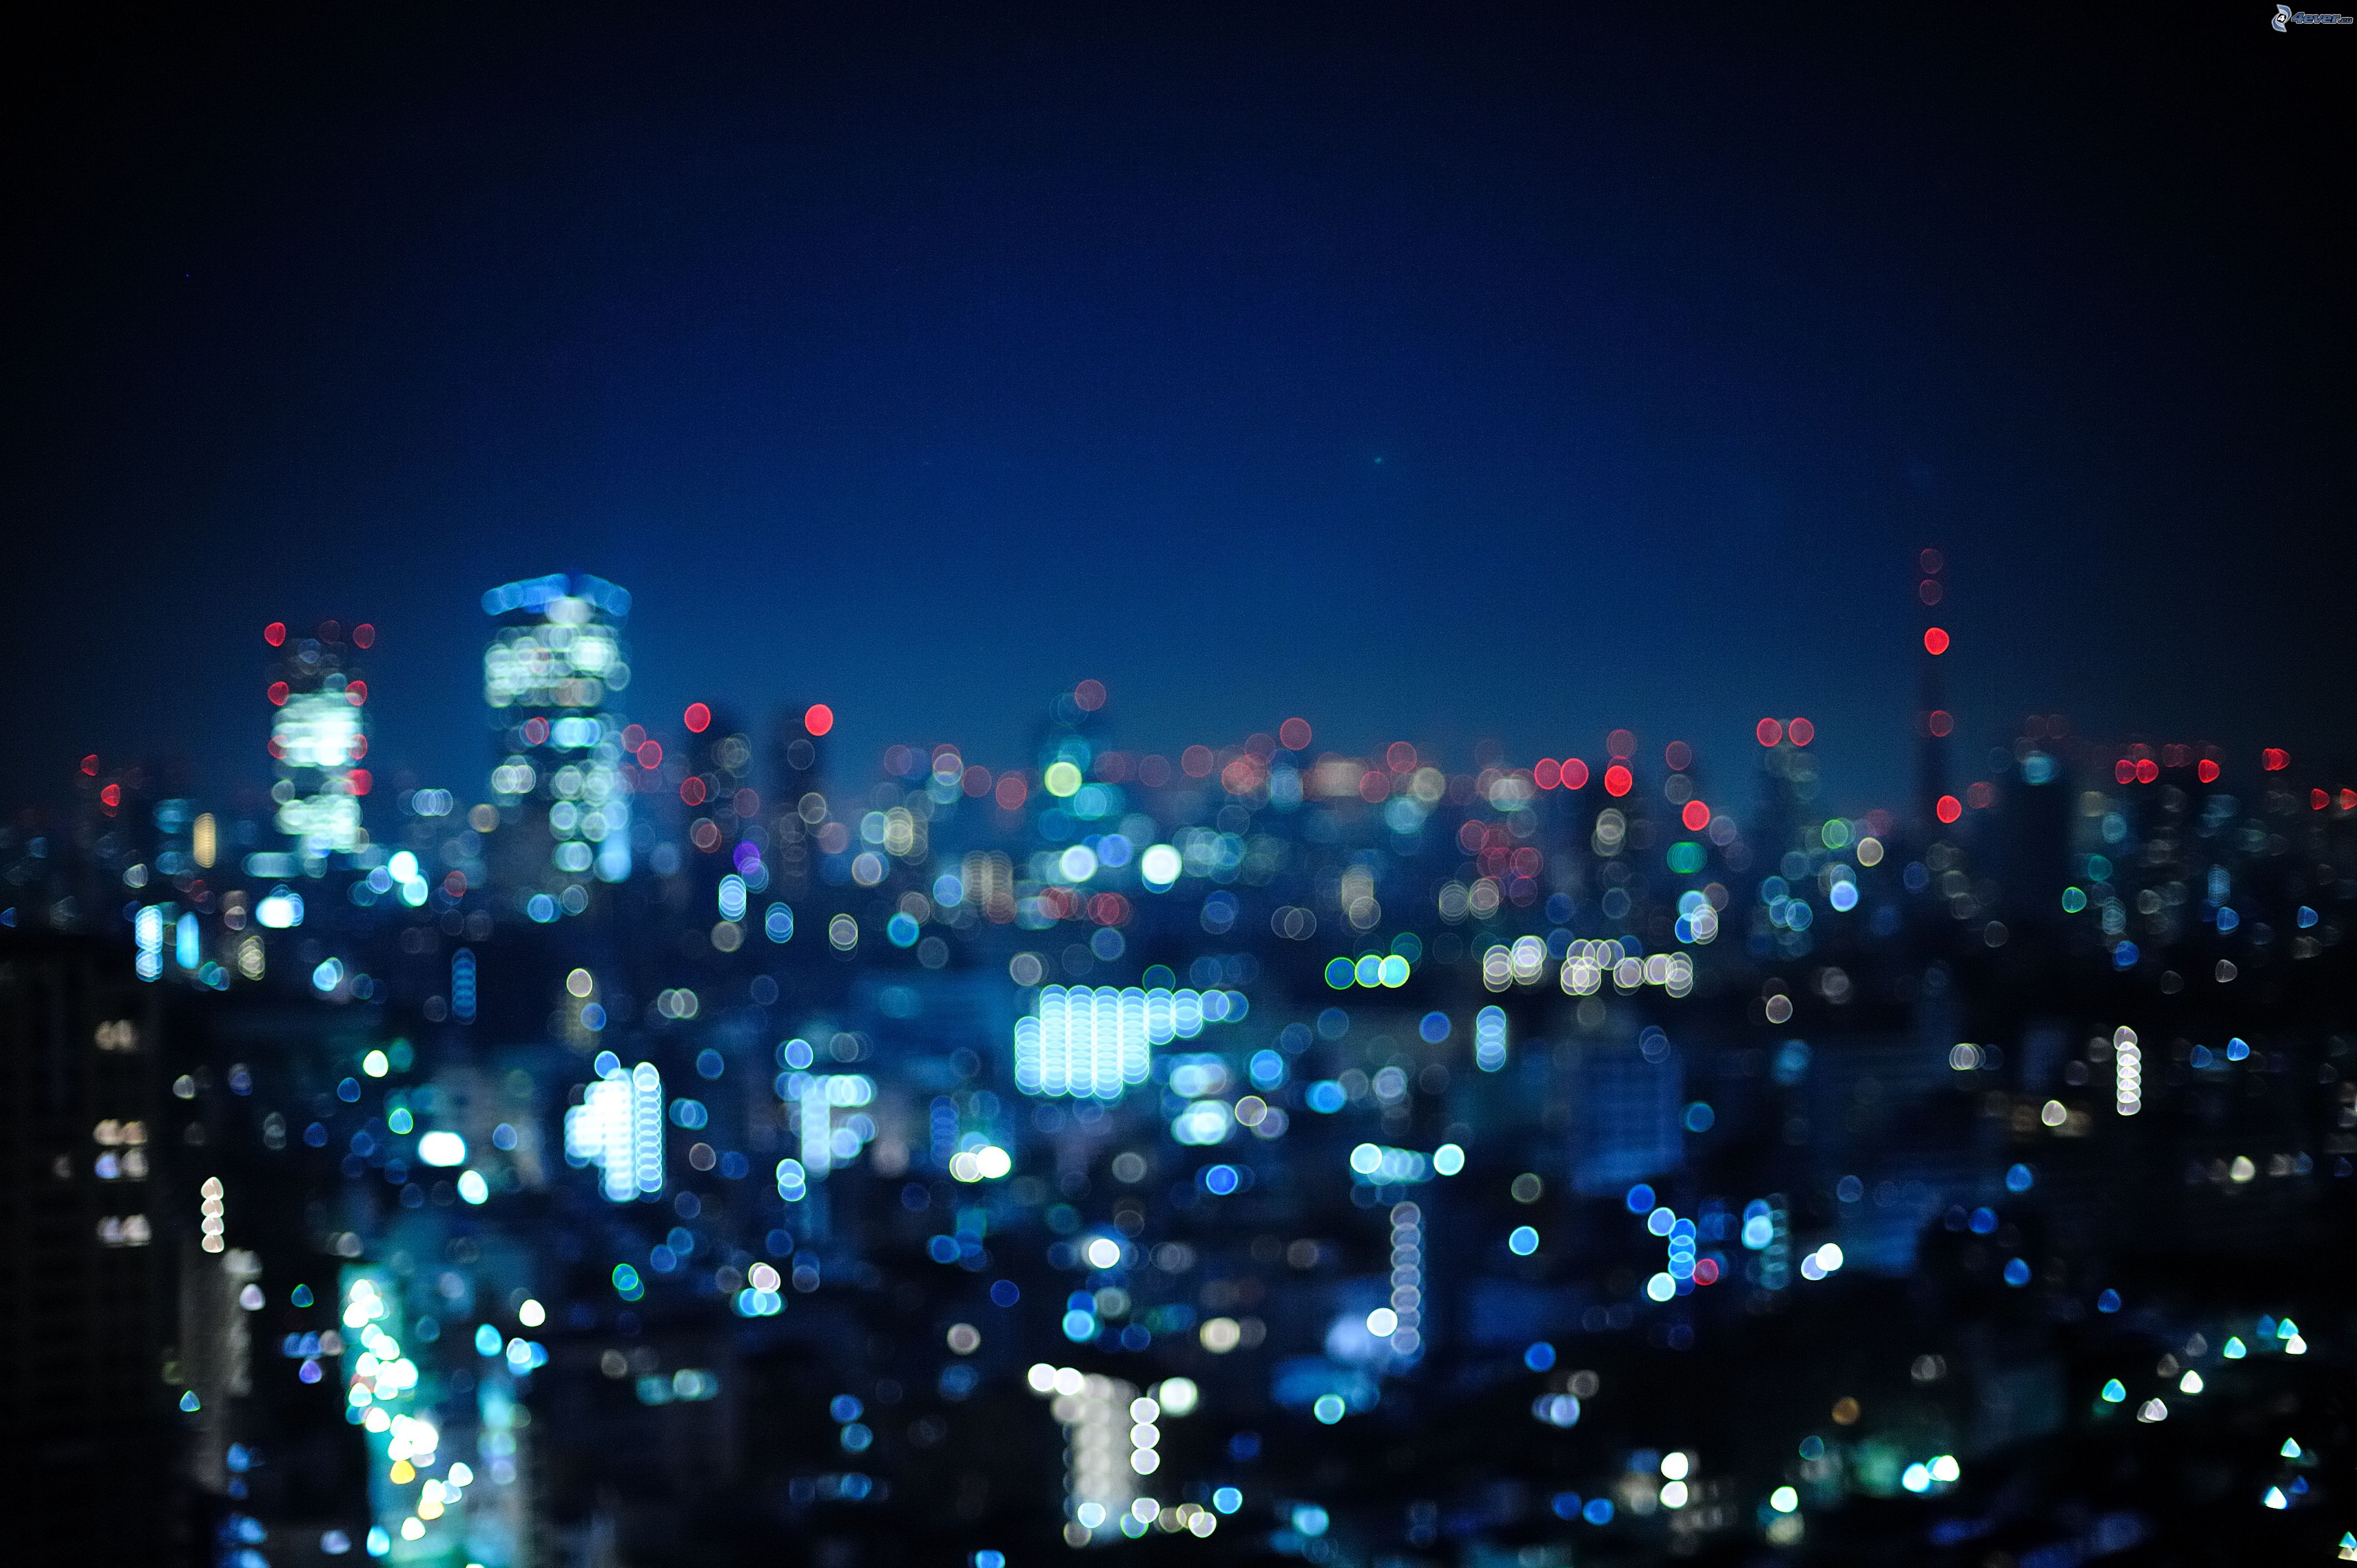 Night city